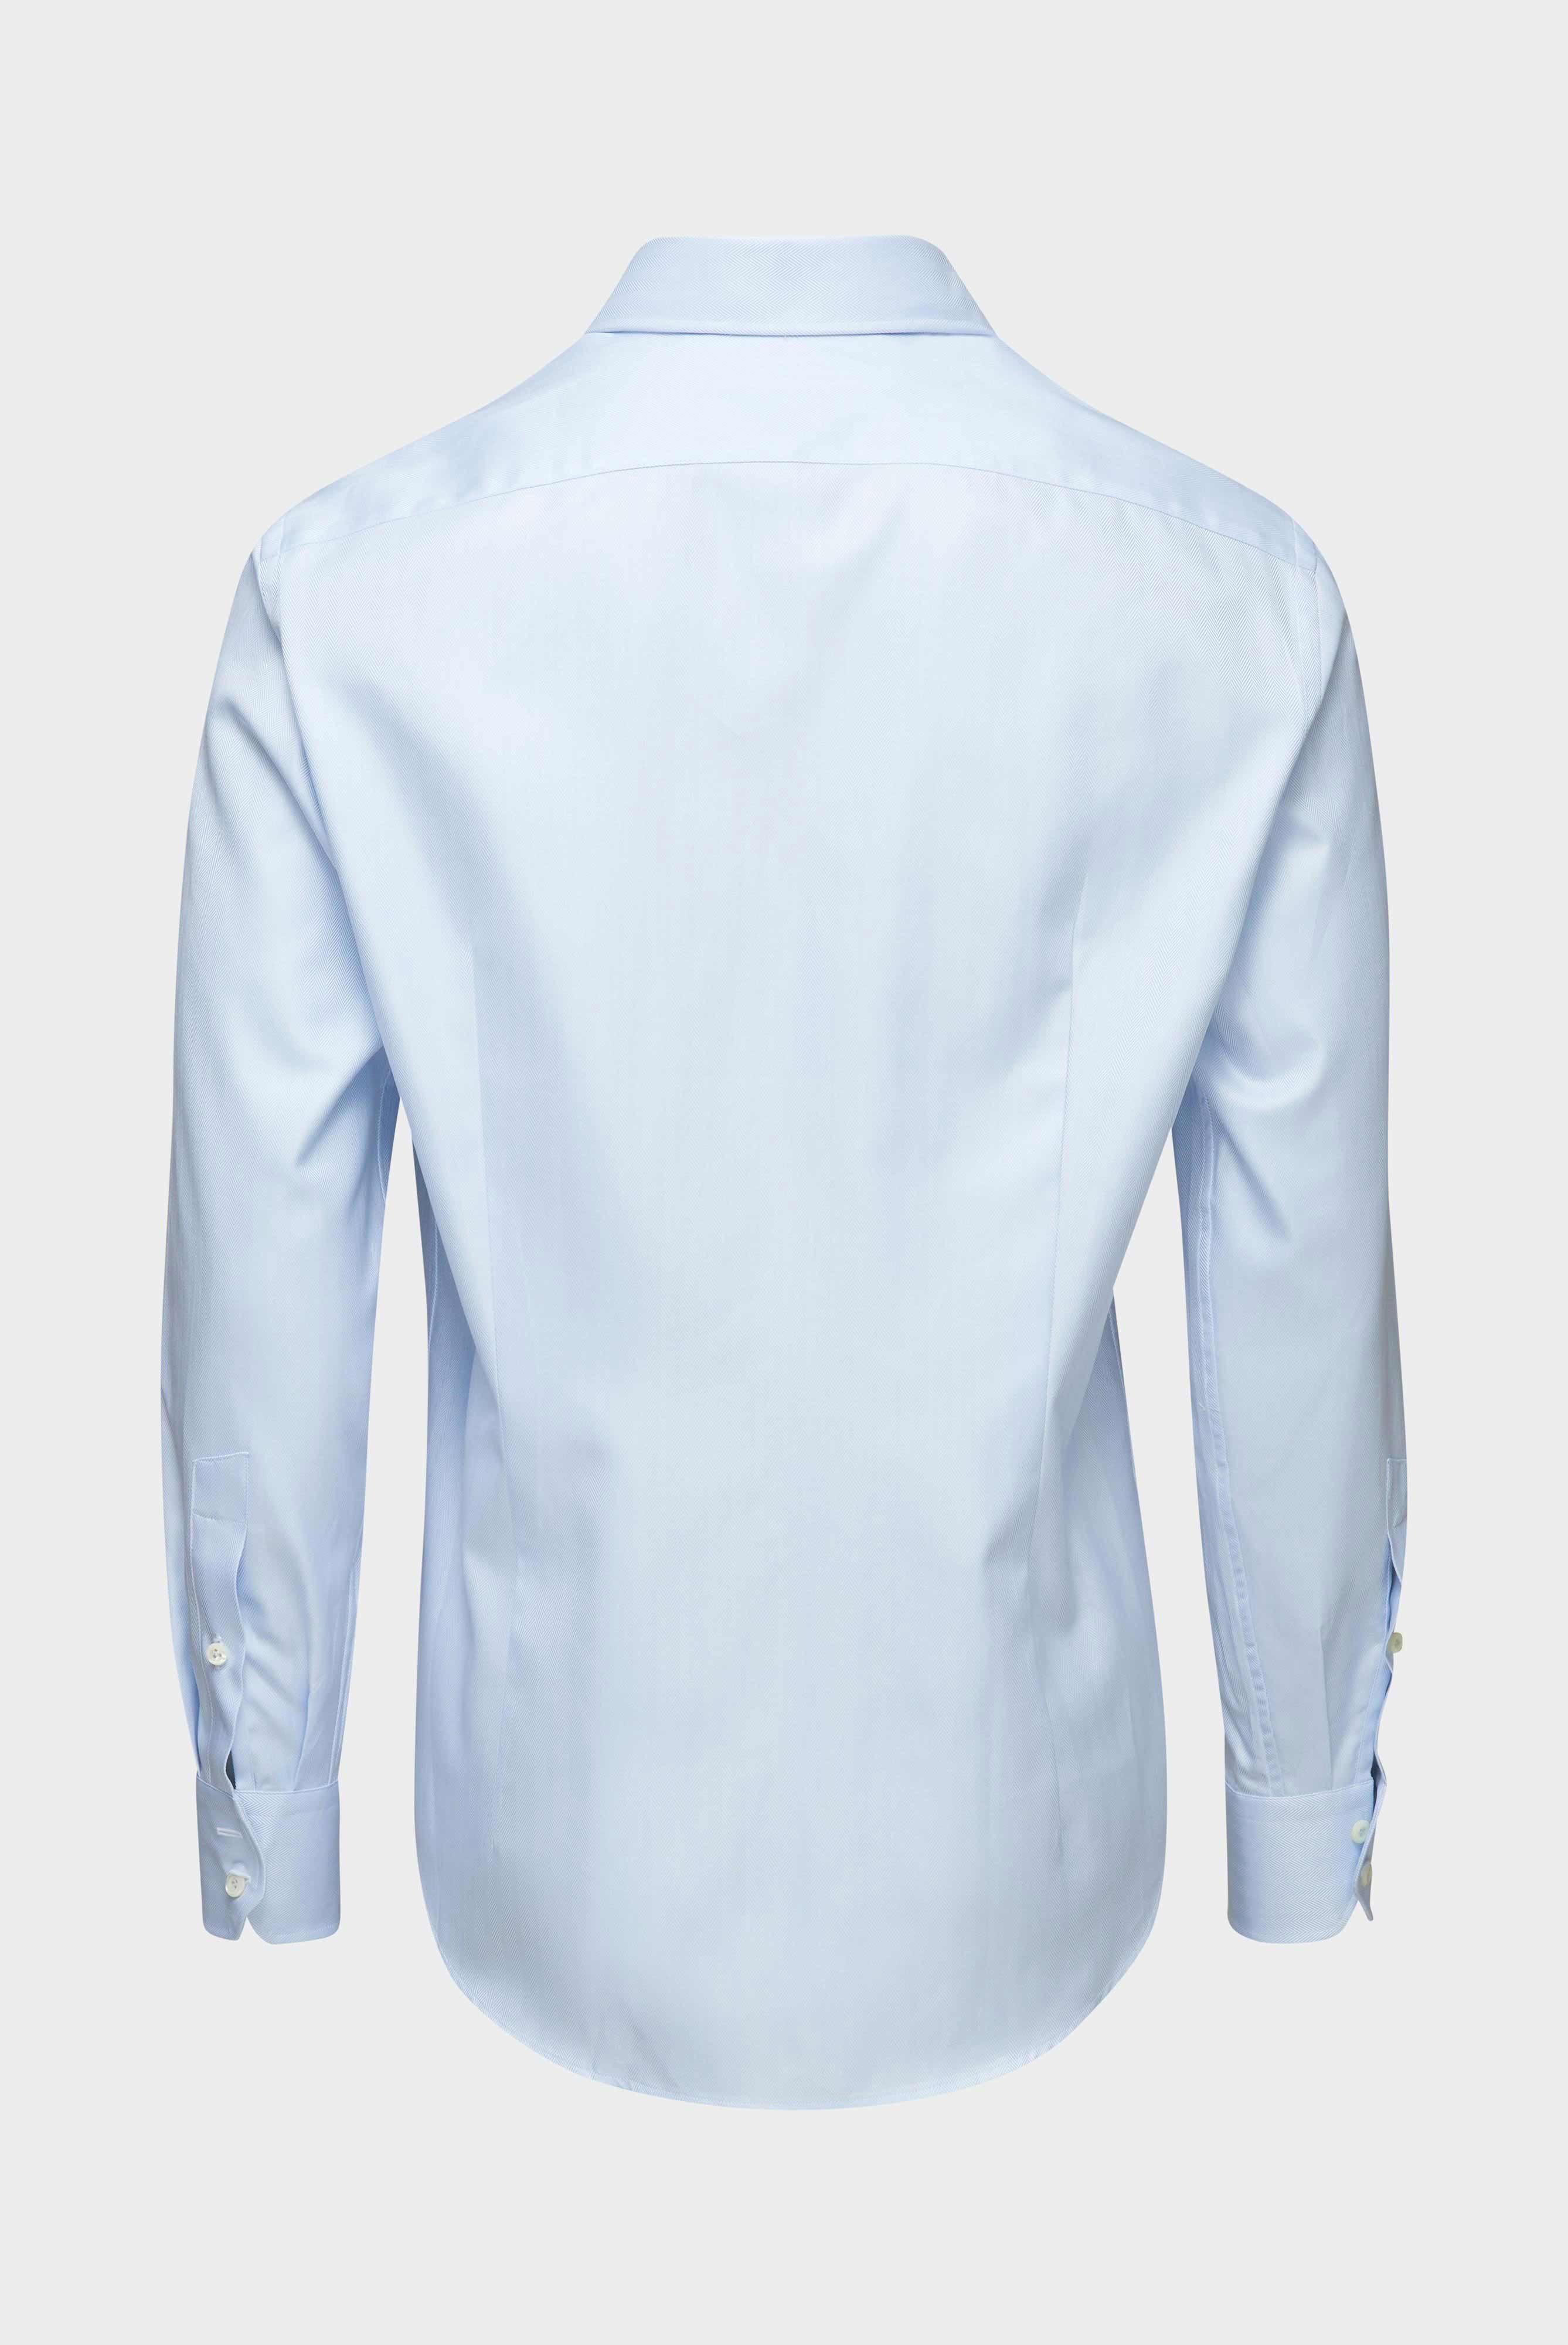 Business Hemden+Twill Hemd mit Fischgrat Tailor Fit+20.2020.AV.102501.710.41